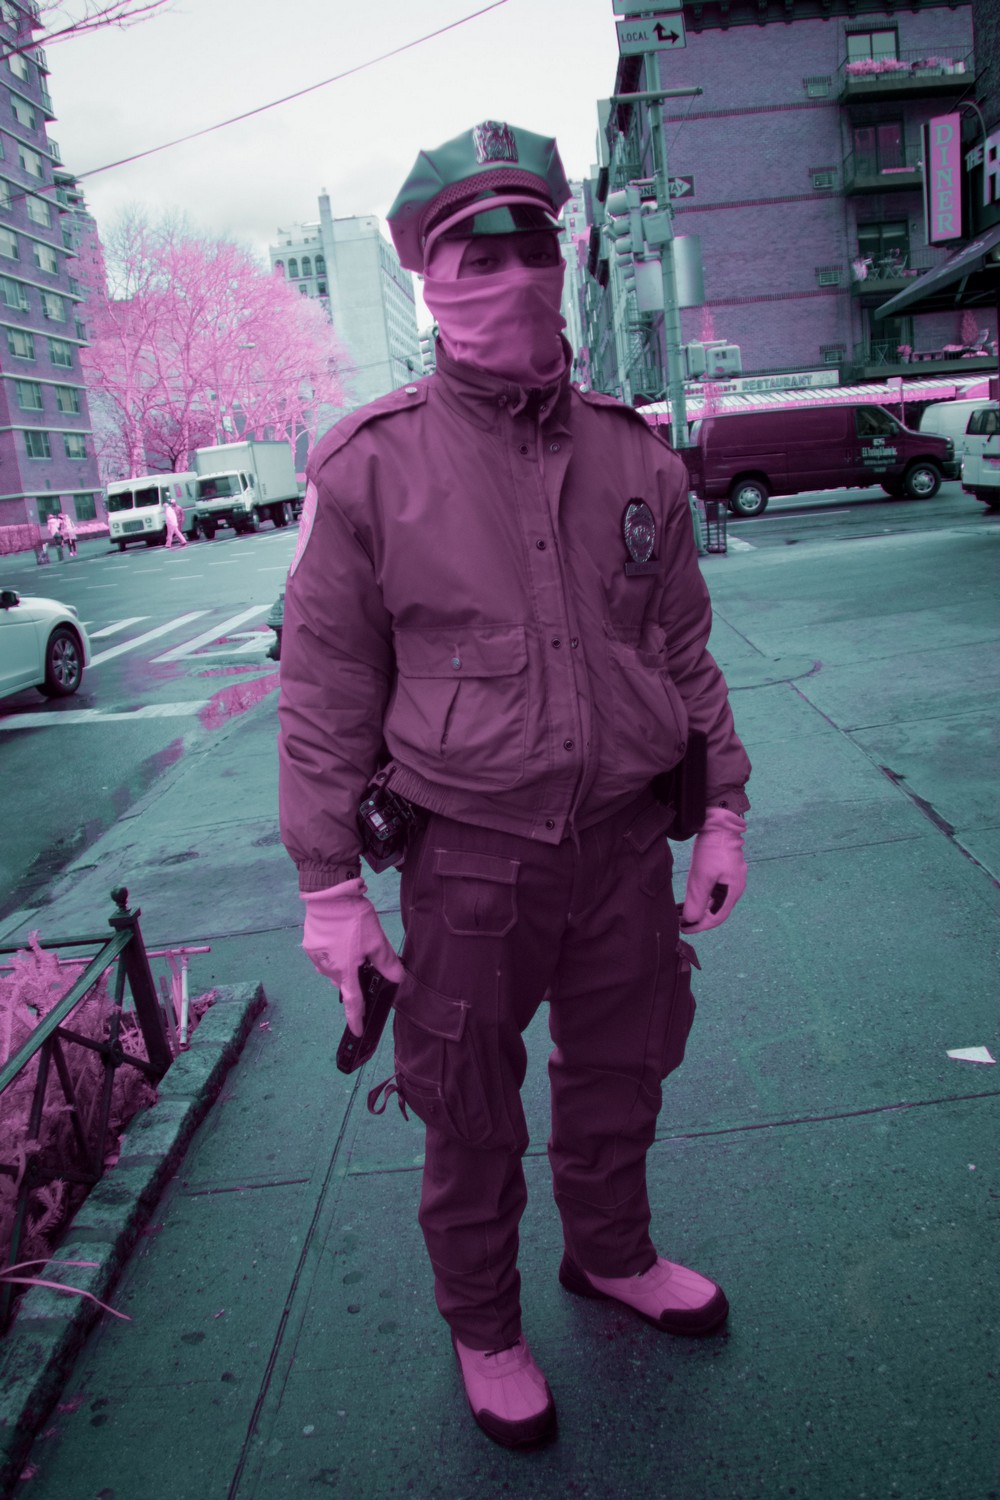 Инфракрасные снимки Нью-Йорка от Райана Берга